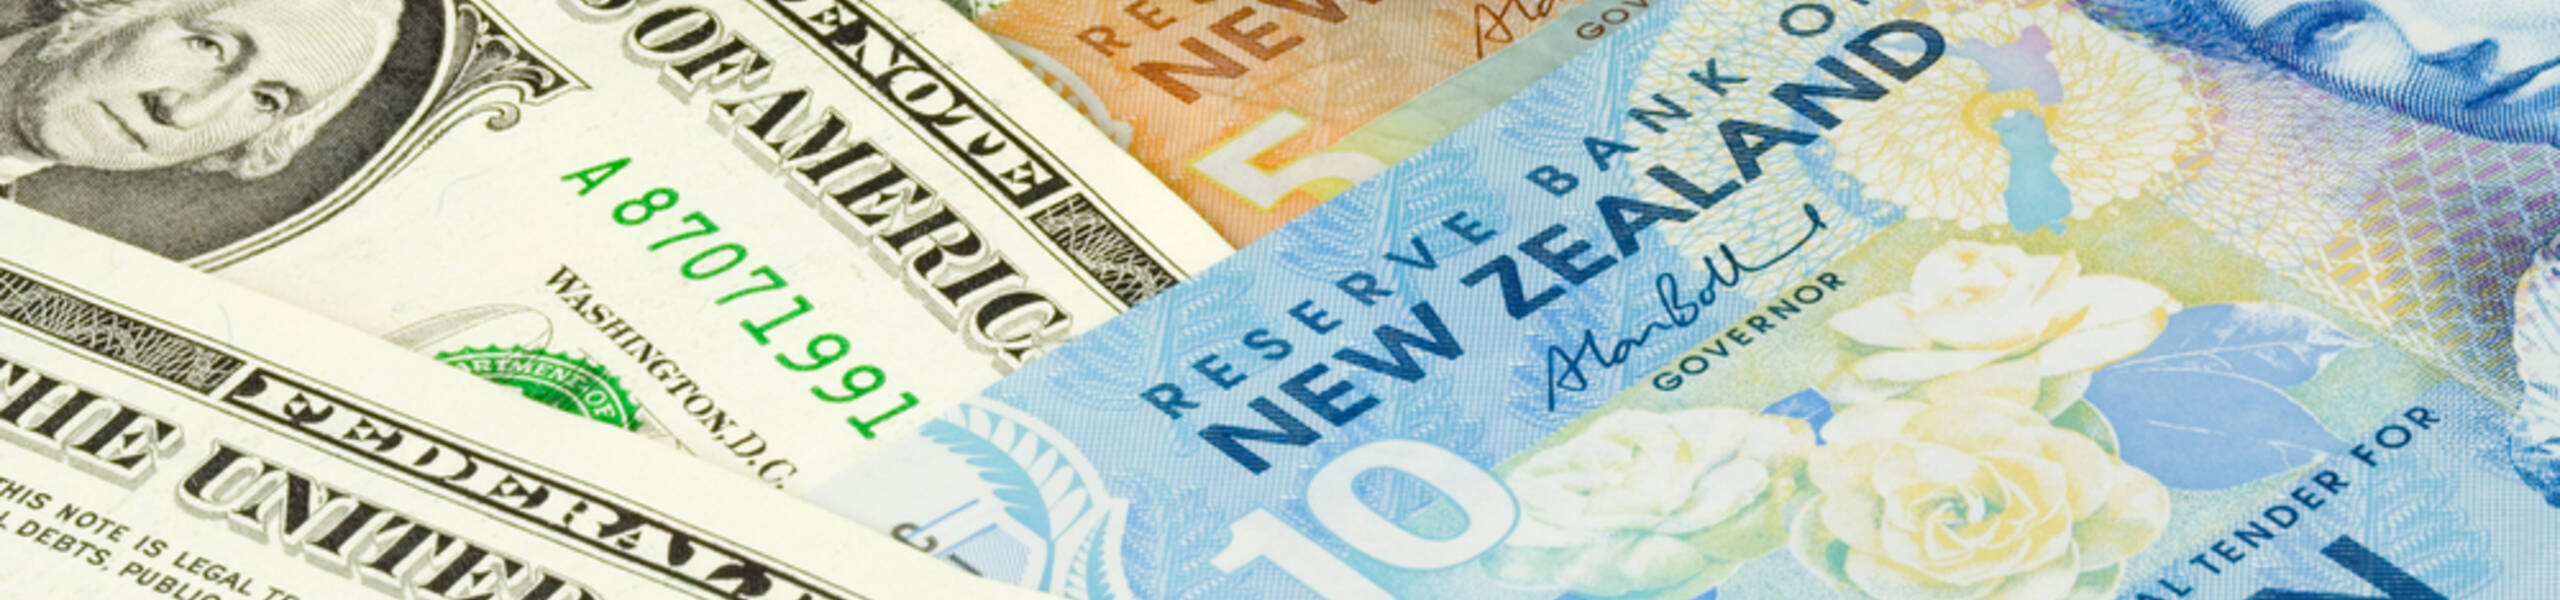 NZD/USD : อาจจะมีการปรับตัวขึ้นเล็กน้อย